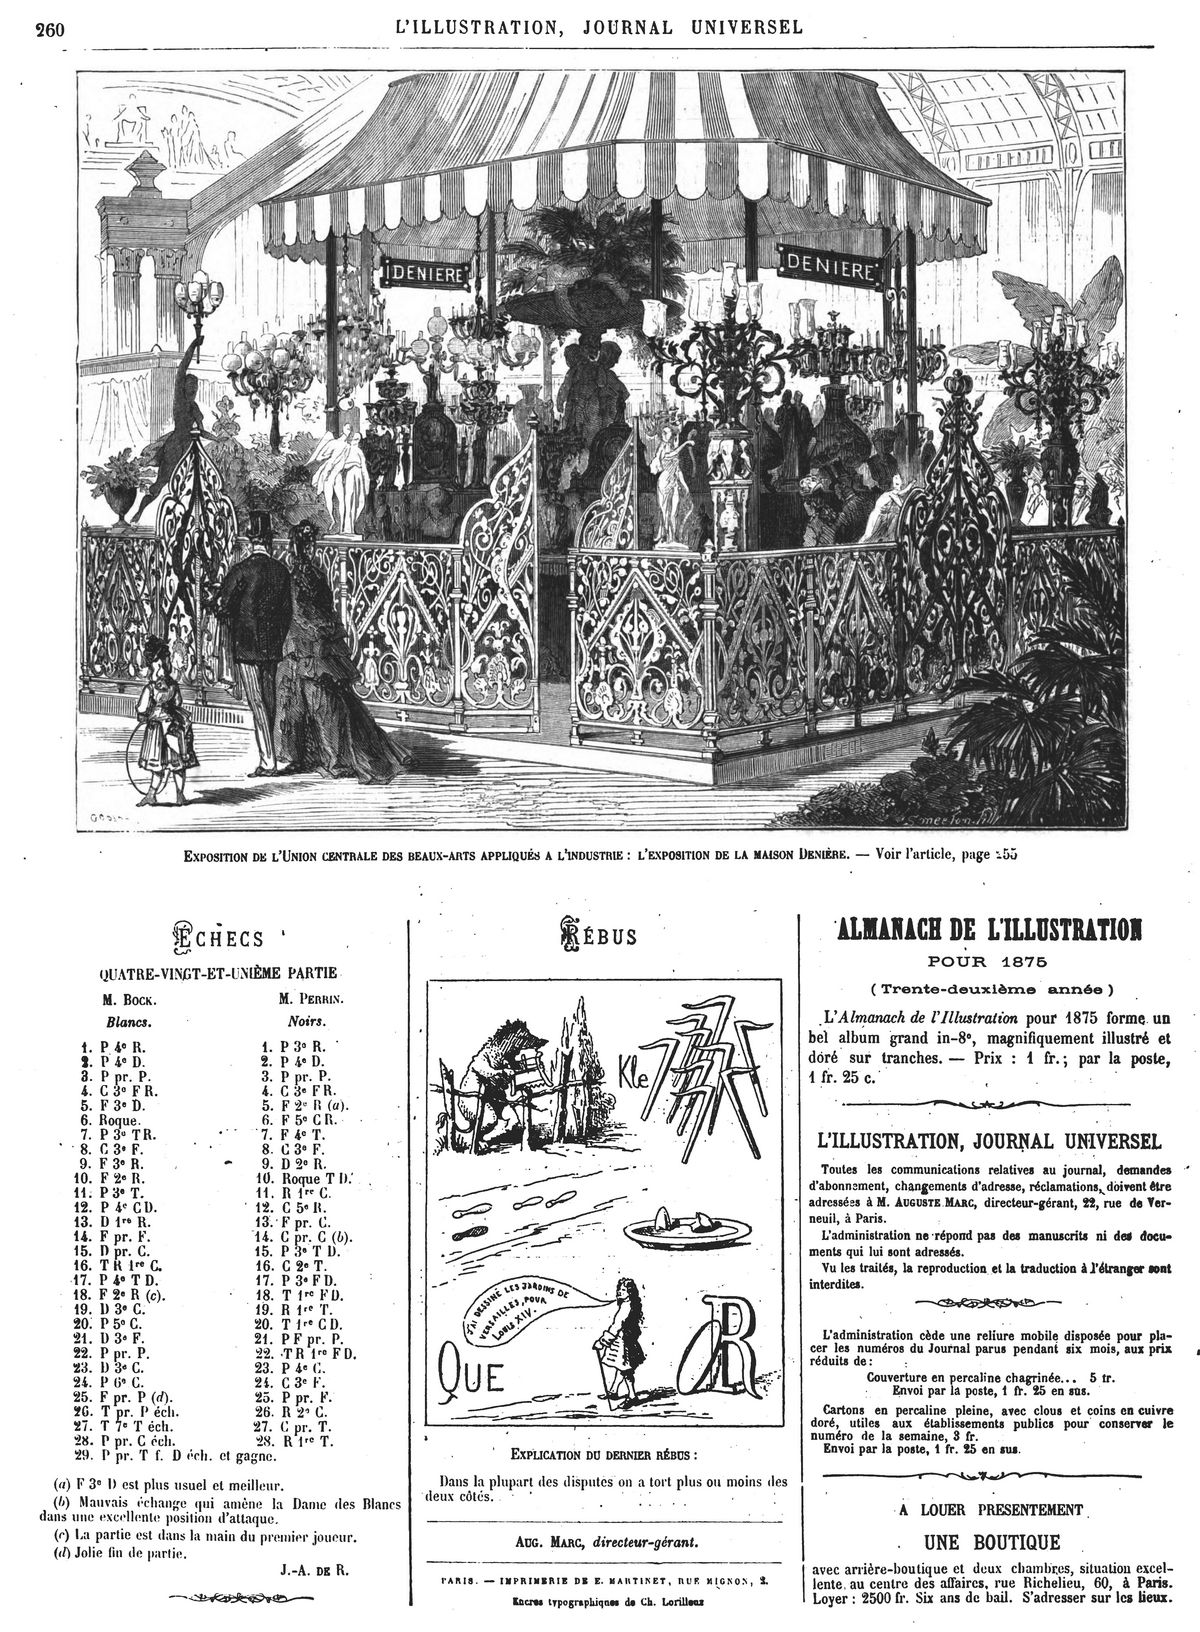 Exposition des beaux-arts appliqués à l’industrie: l’exposition de la maison Denière. (gravure 1874)